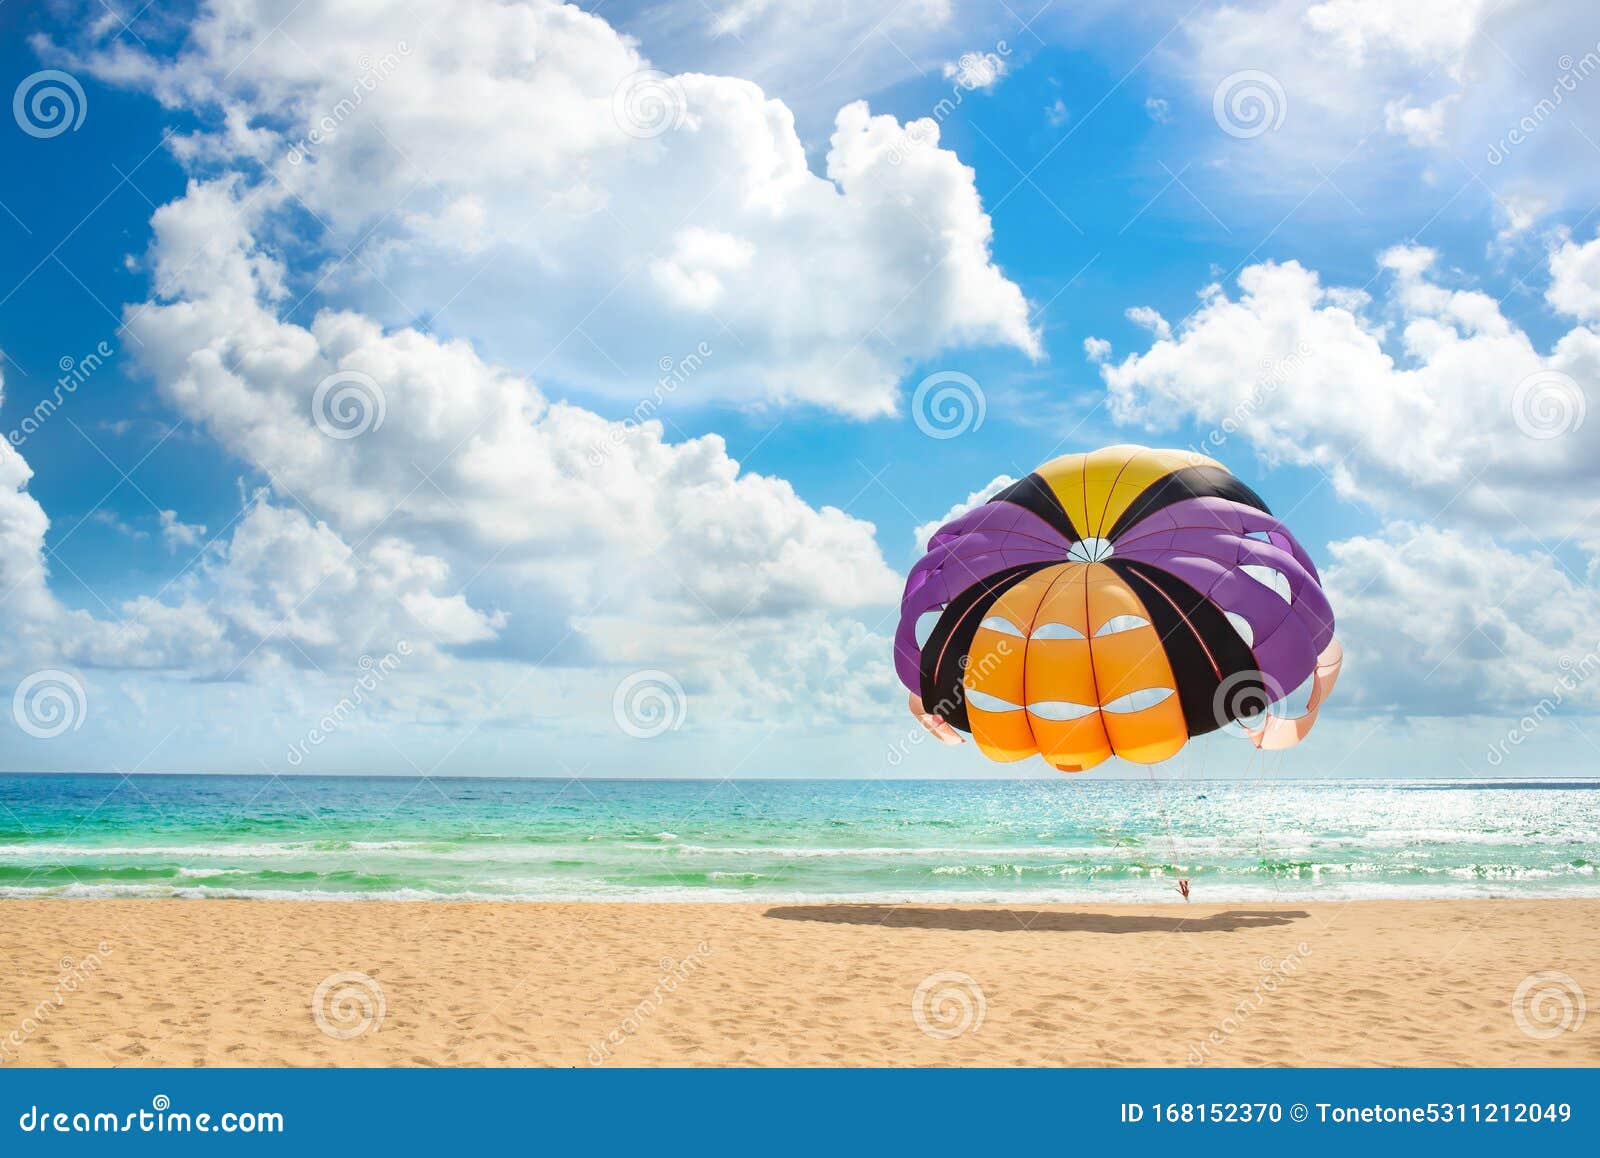 巴厘岛海龟岛上海上降落伞运动摄影图高清摄影大图-千库网